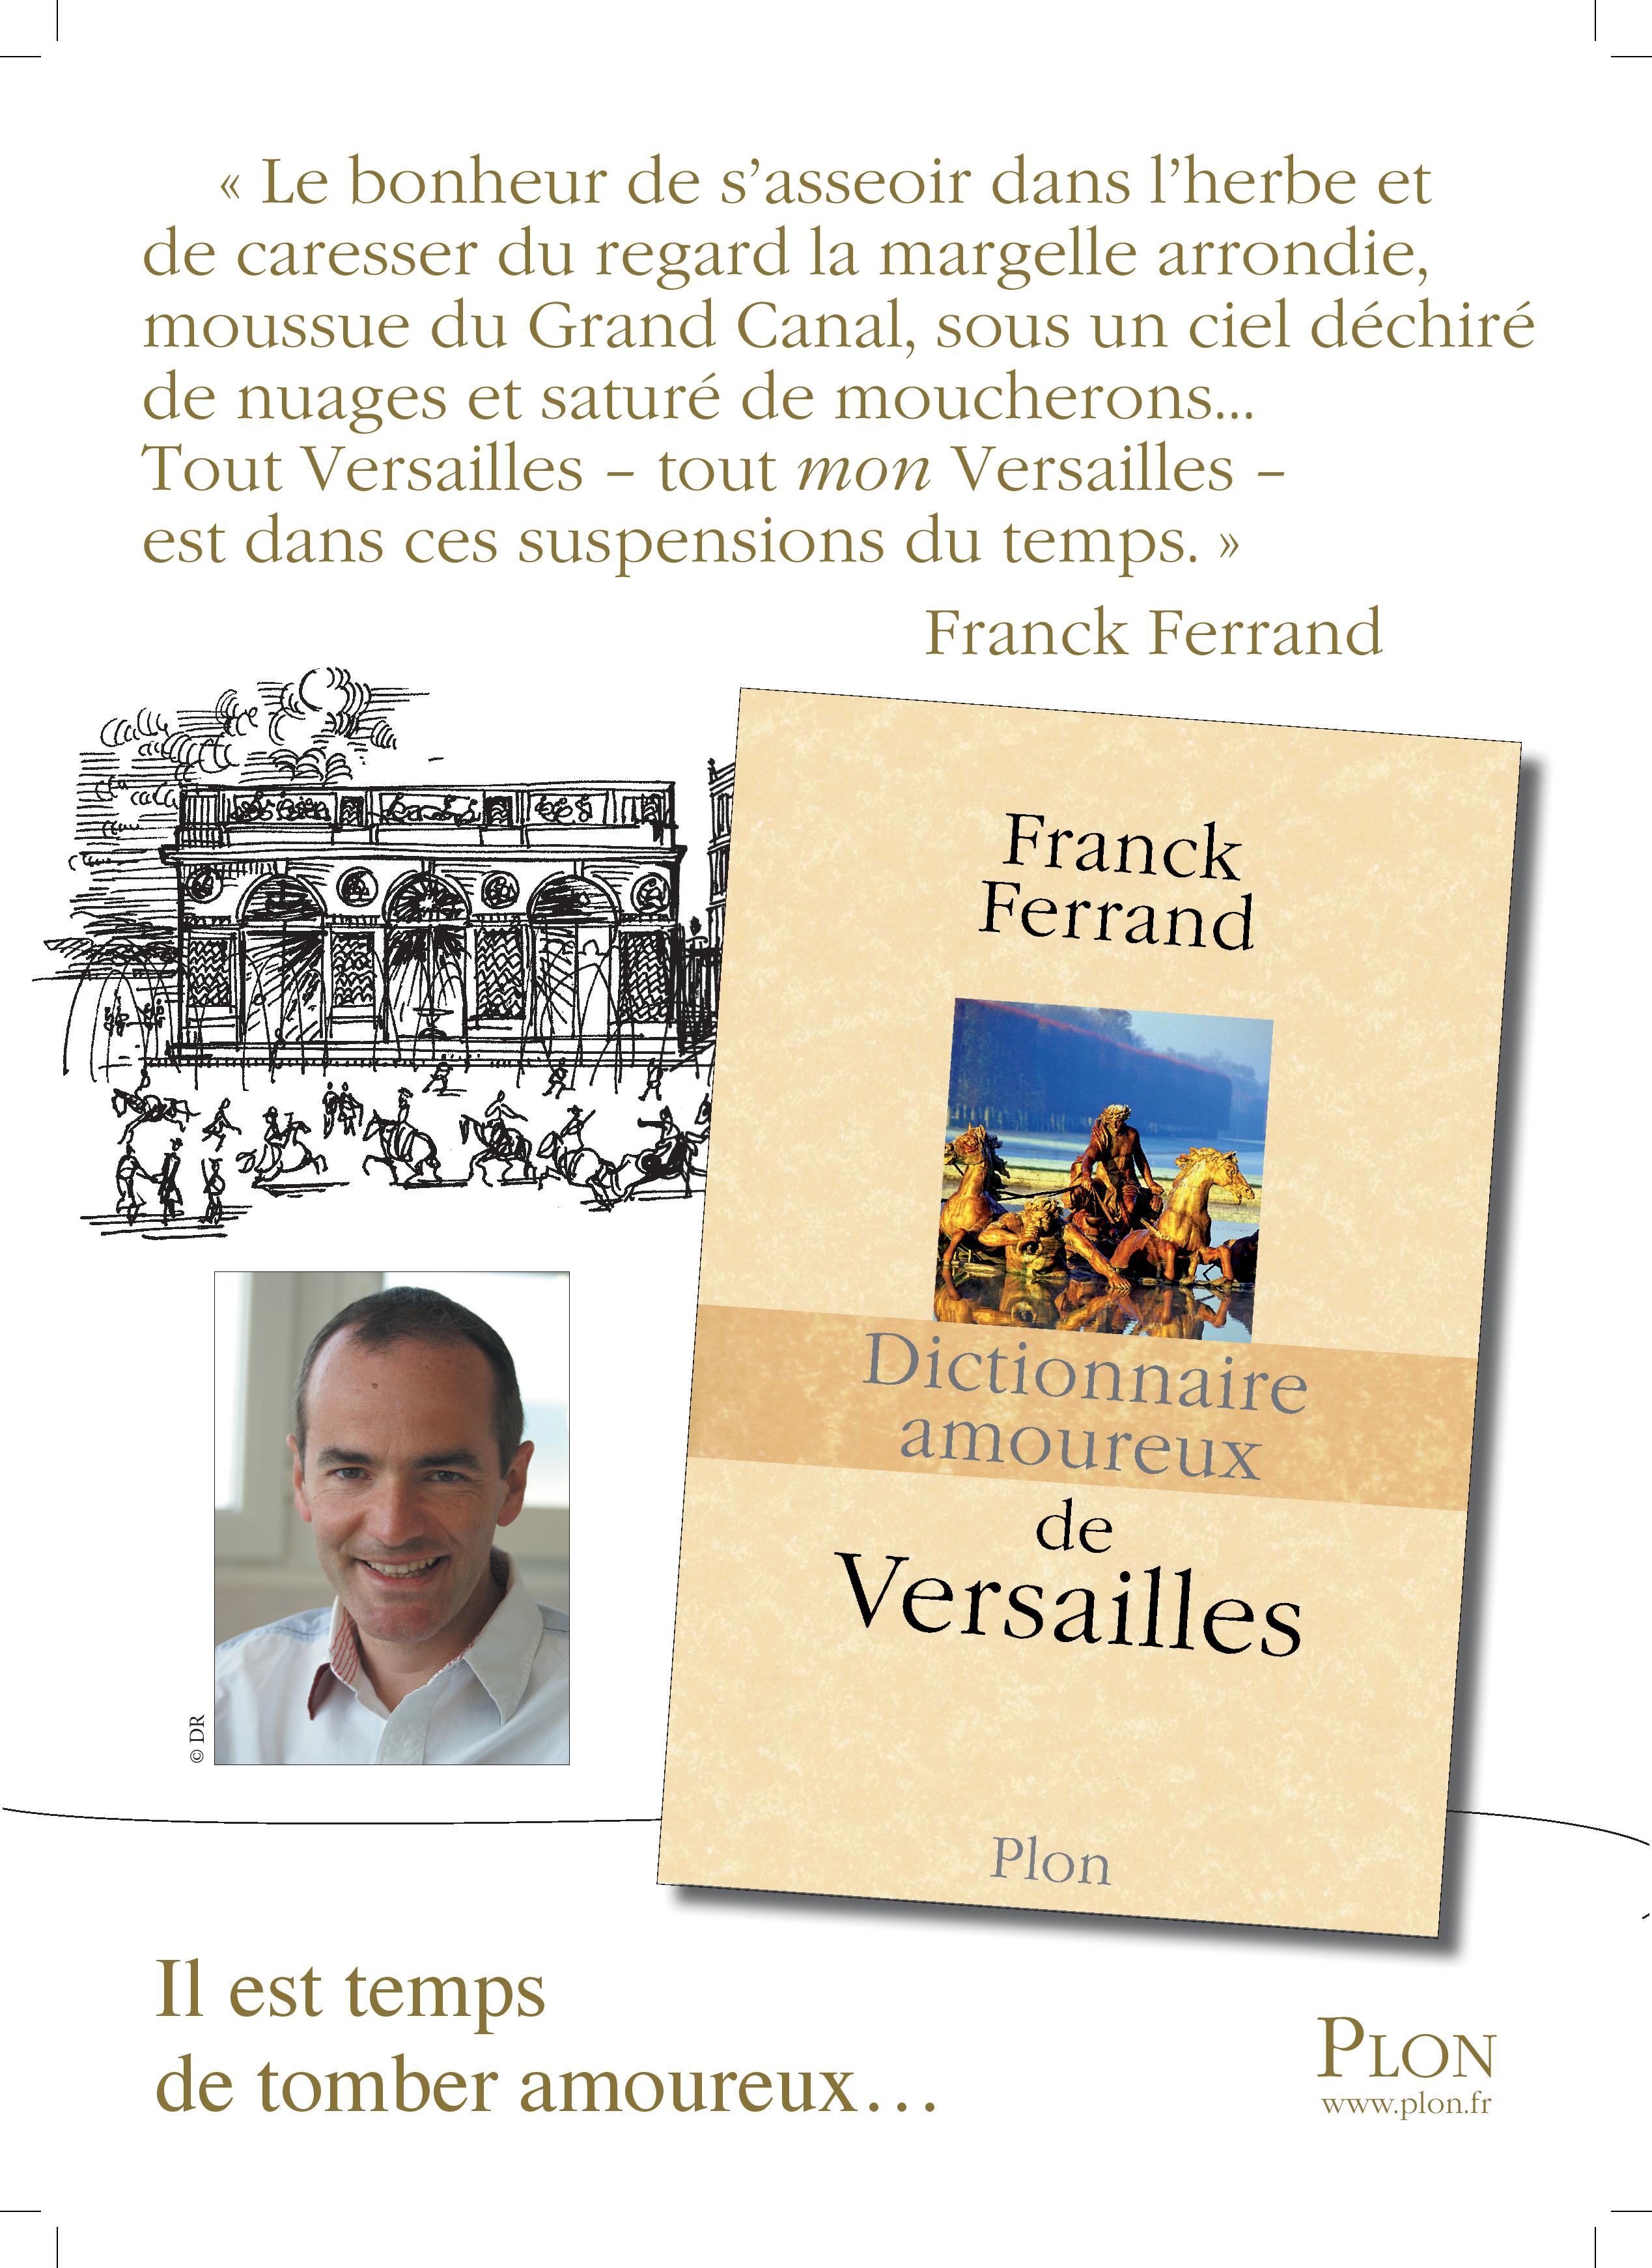 Ferrand 4 Historia-page-001